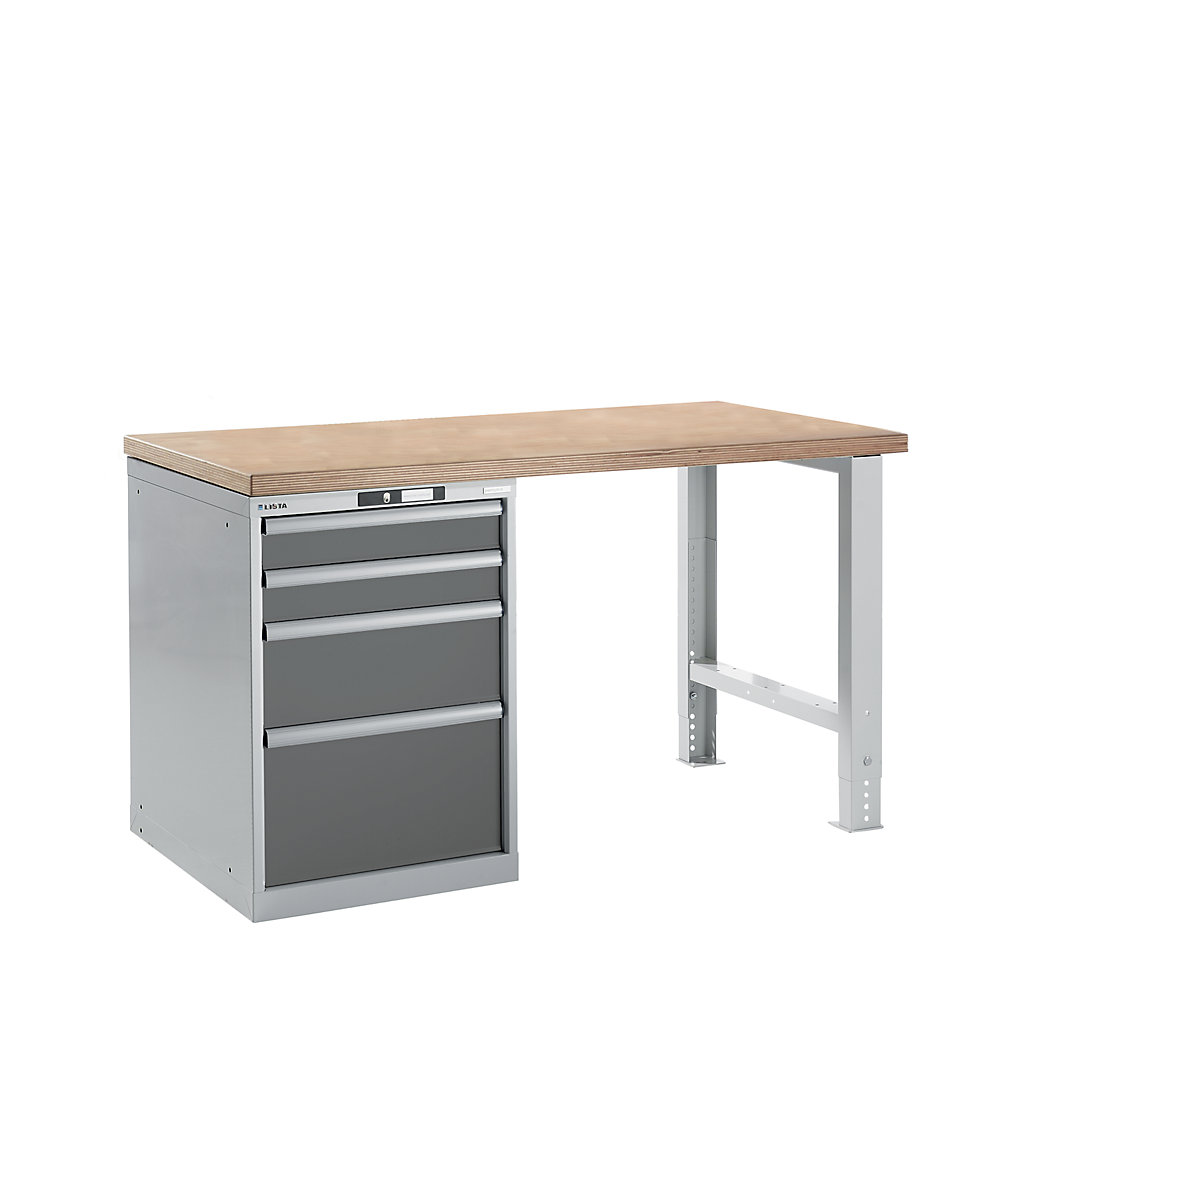 Sistema de bancadas de trabalho – LISTA, altura 840 mm, armário inferior, 4 gavetas, cinzento antracite, largura da mesa 1500 mm-8